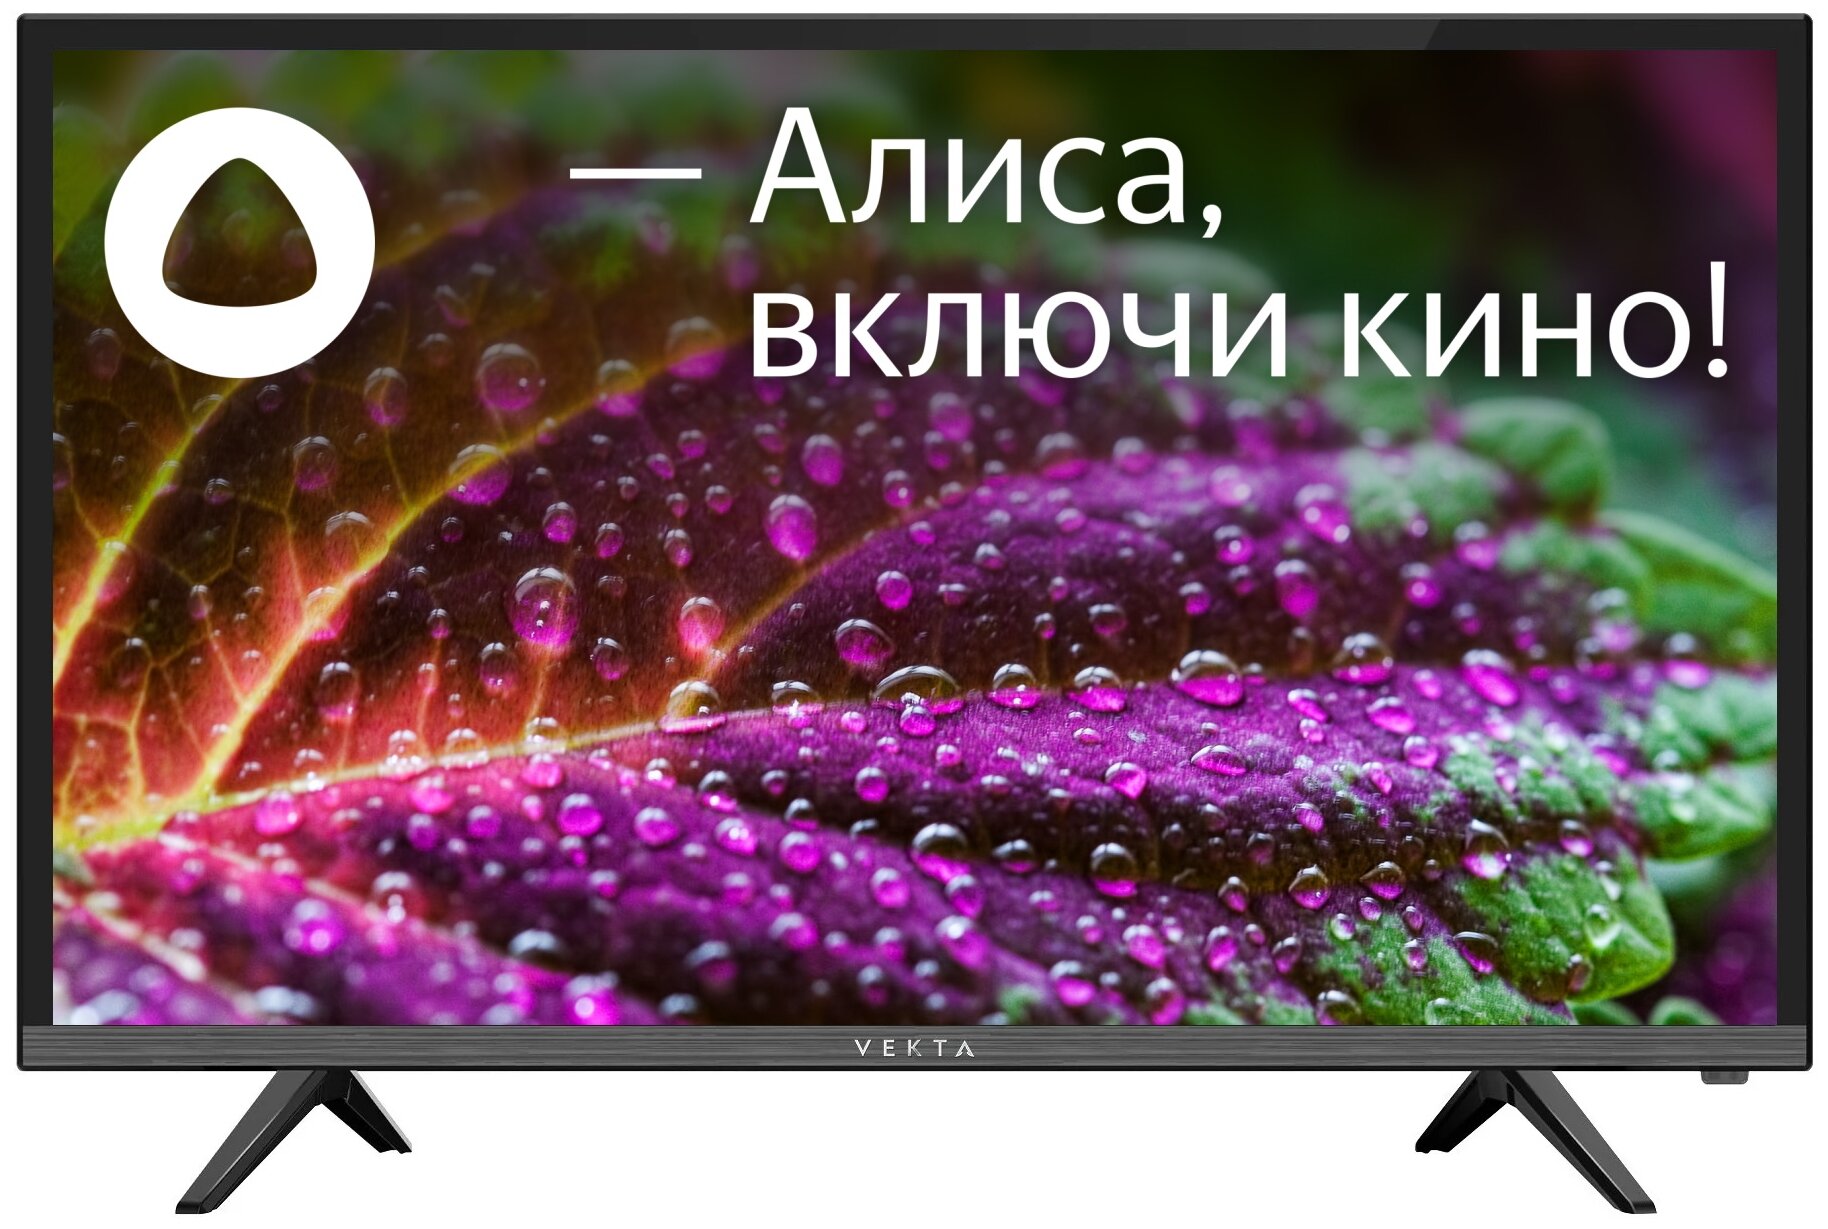 24" Телевизор VEKTA LD-24SR4815BS 2021 LED, HDR на платформе Яндекс.ТВ, черный